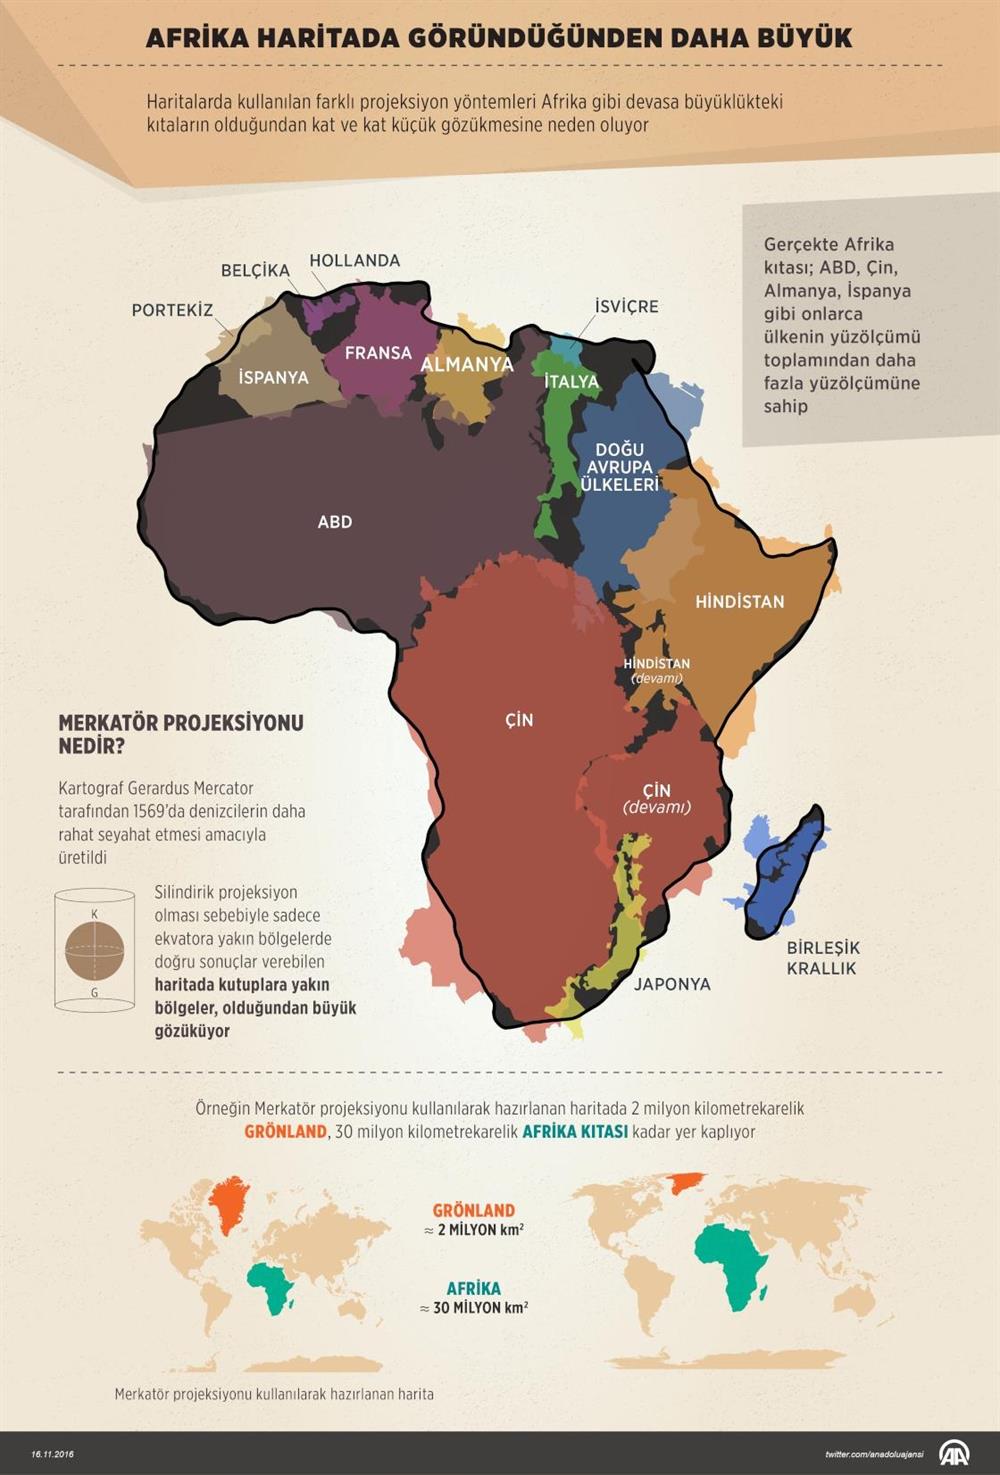 Haritalarda kullanılan farklı projeksiyon yöntemleri Afrika gibi devasa büyüklükteki kıtaların olduğundan kat ve kat küçük gözükmesine neden oluyor. 